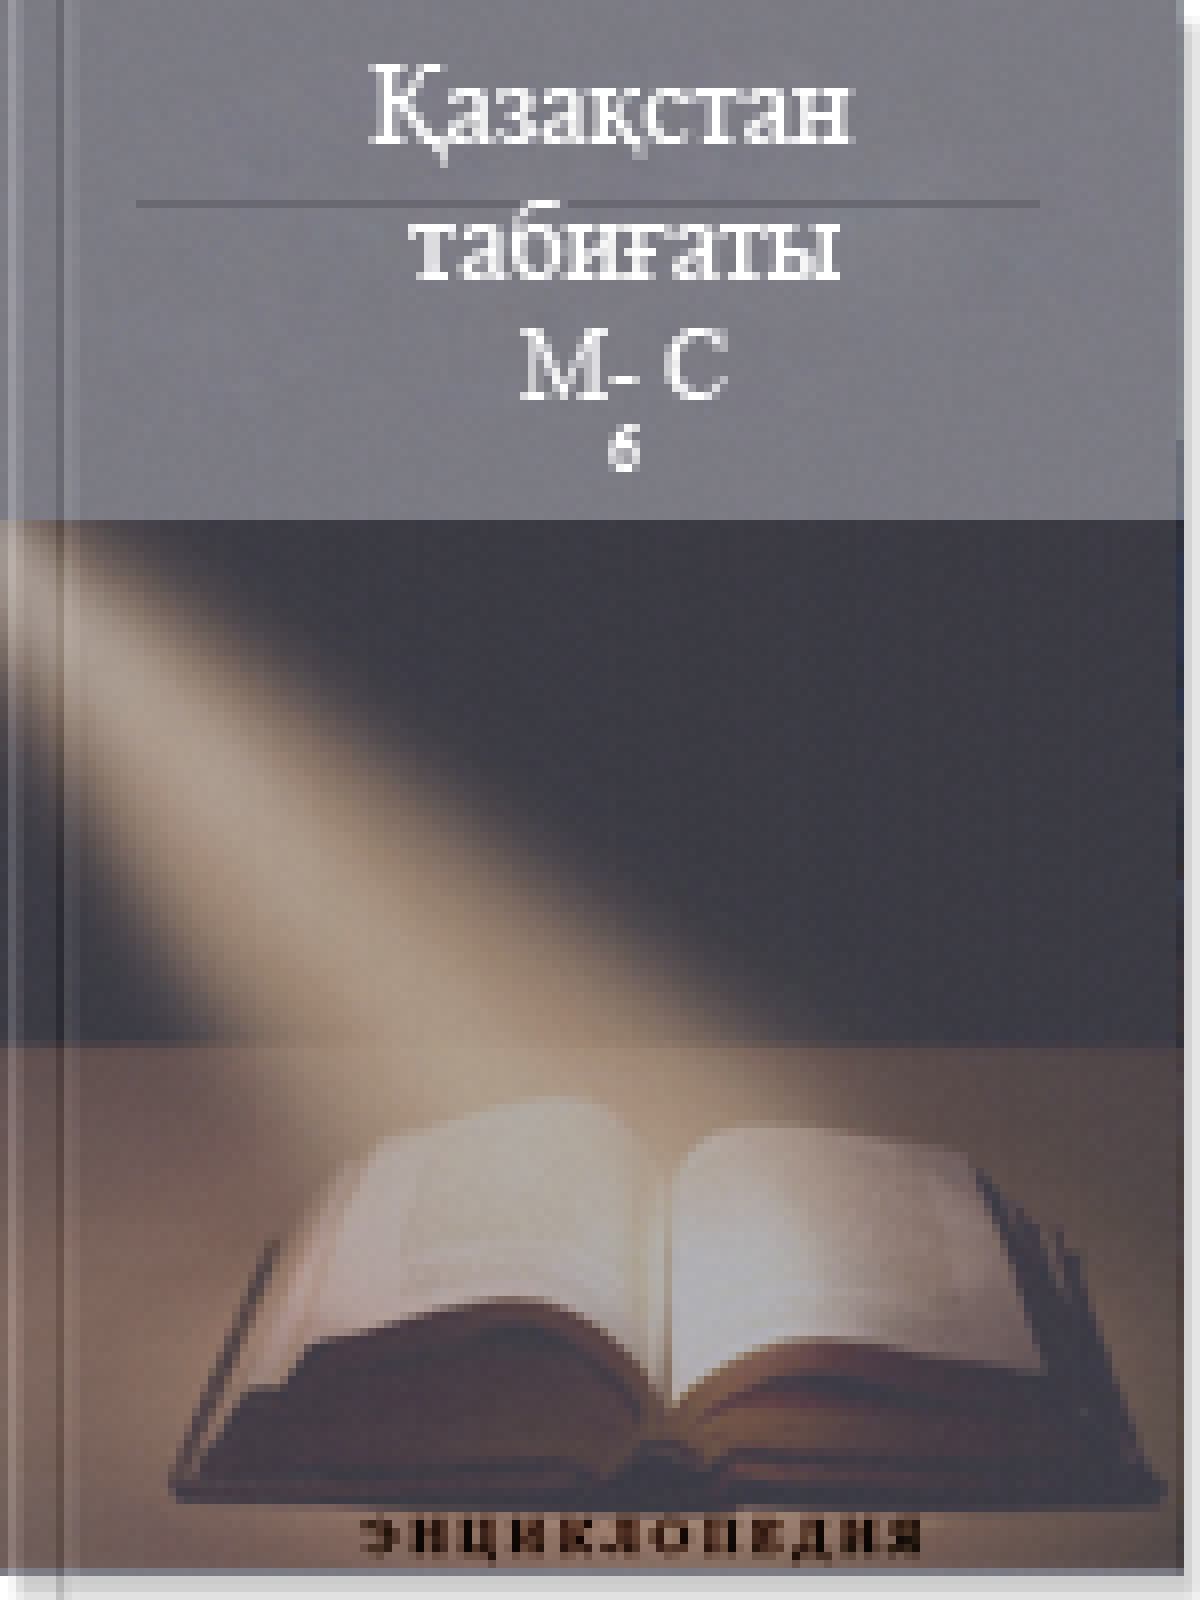 Қазақстан табиғаты 4 том М-С (6)